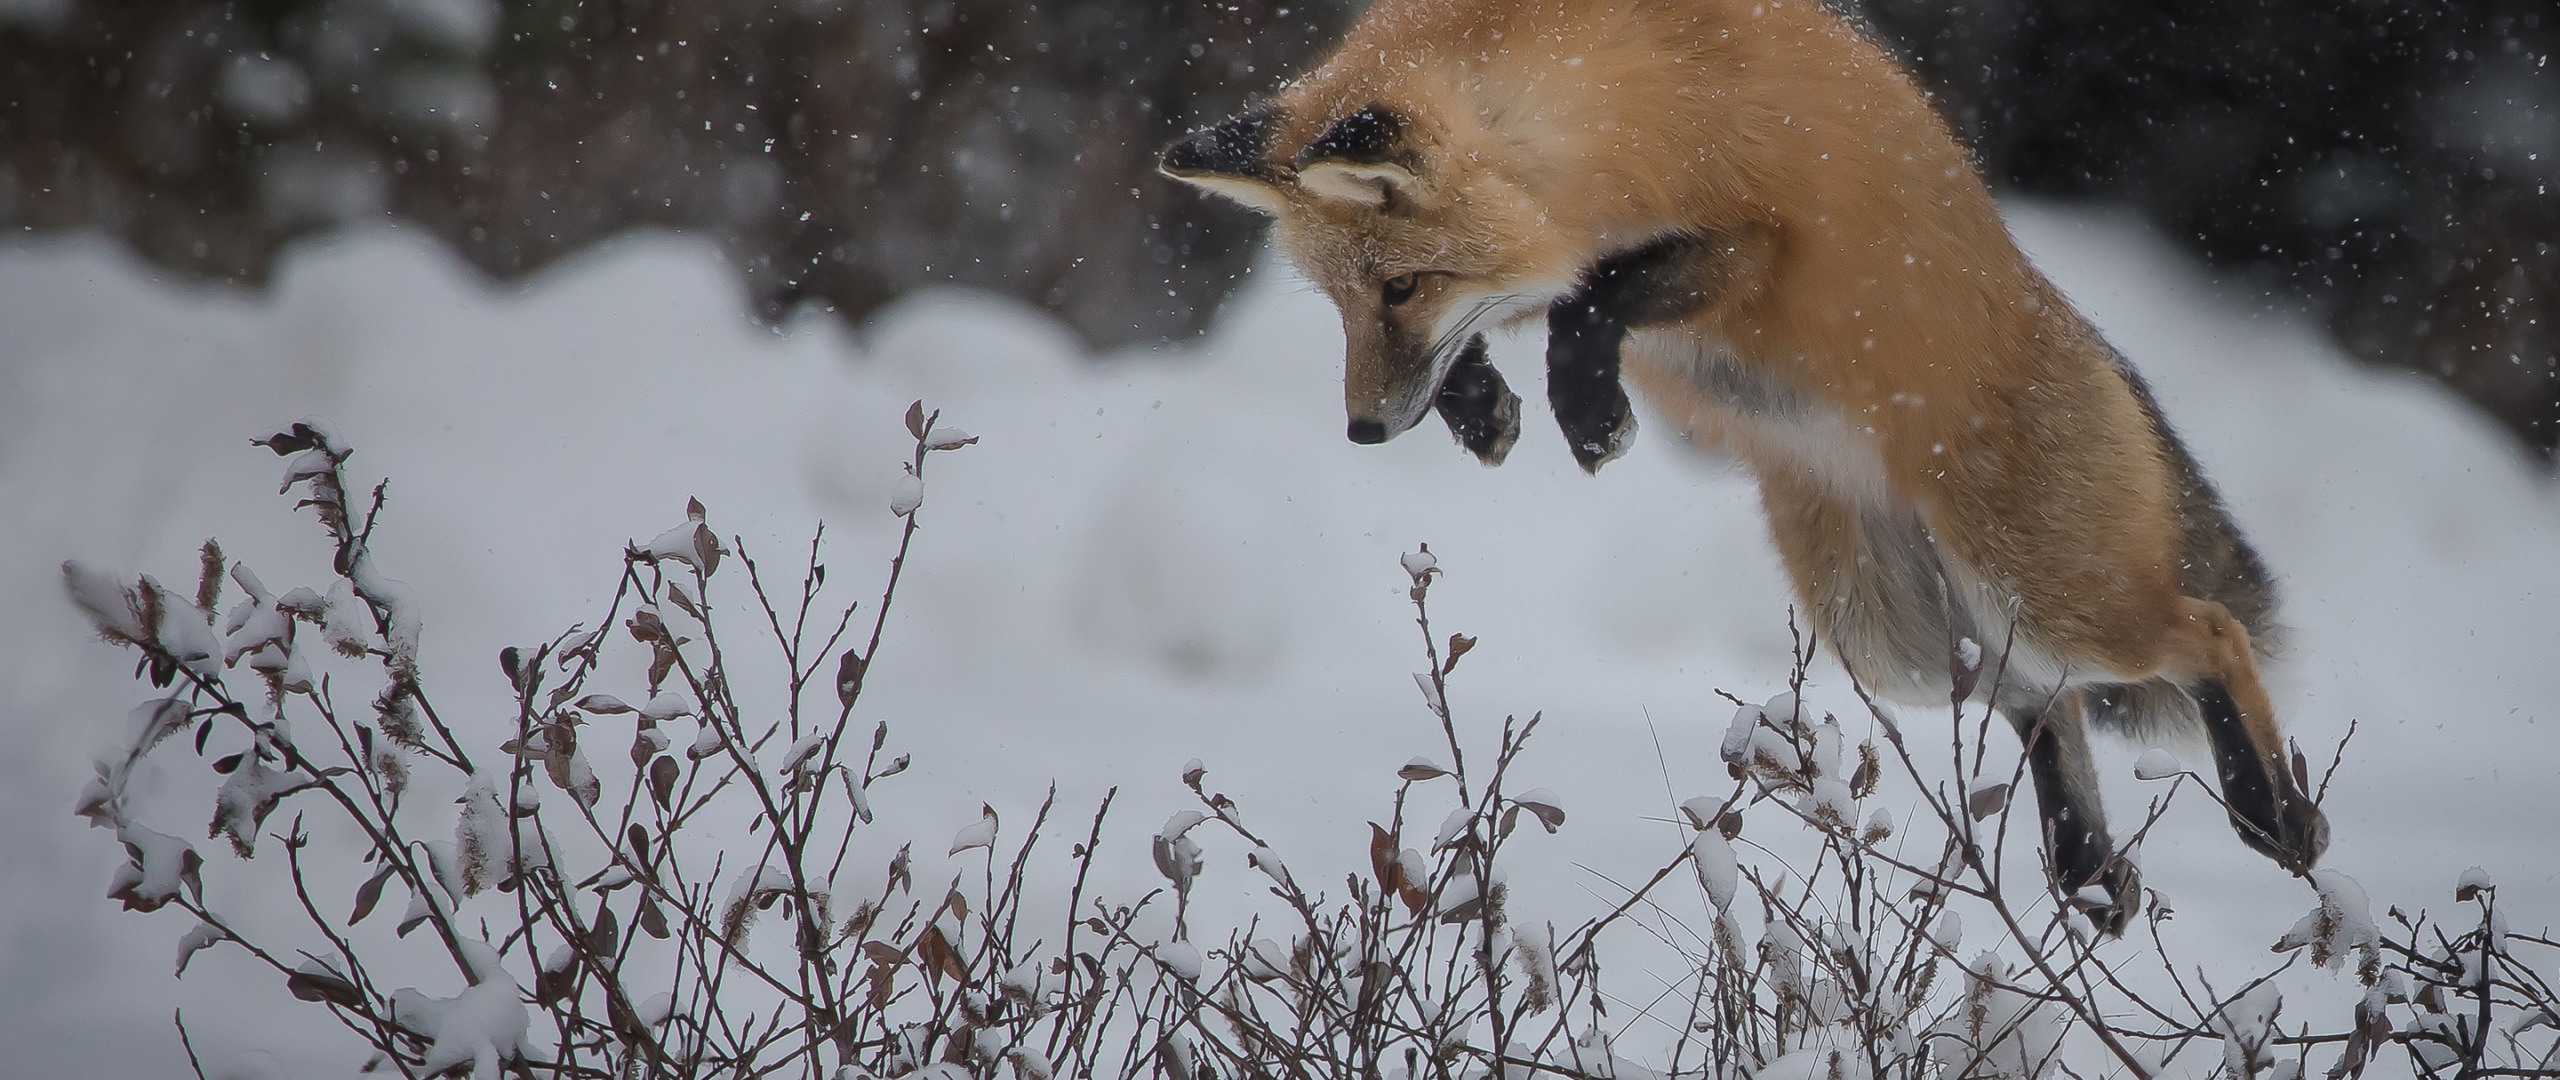 Охота на лису волка. Лиса на охоте. Прыжок лисы. Лиса в охотничьем прыжке. Лиса прыгает в снег.